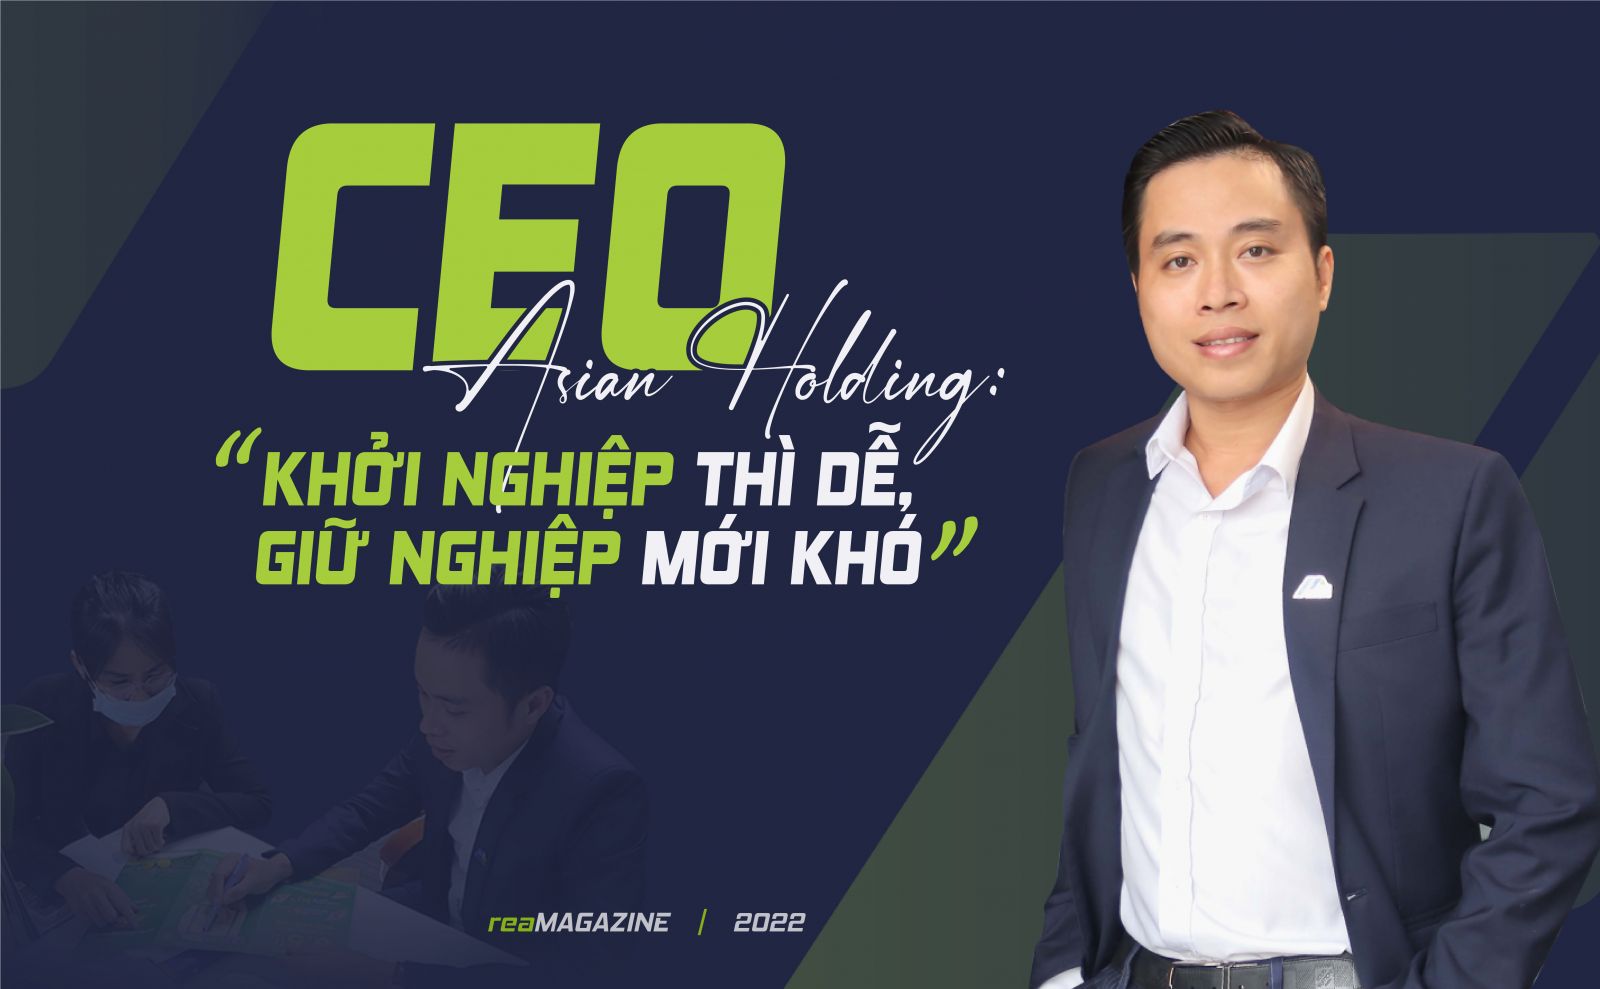 CEO Asian Holding: “Khởi nghiệp thì dễ, giữ nghiệp mới khó”